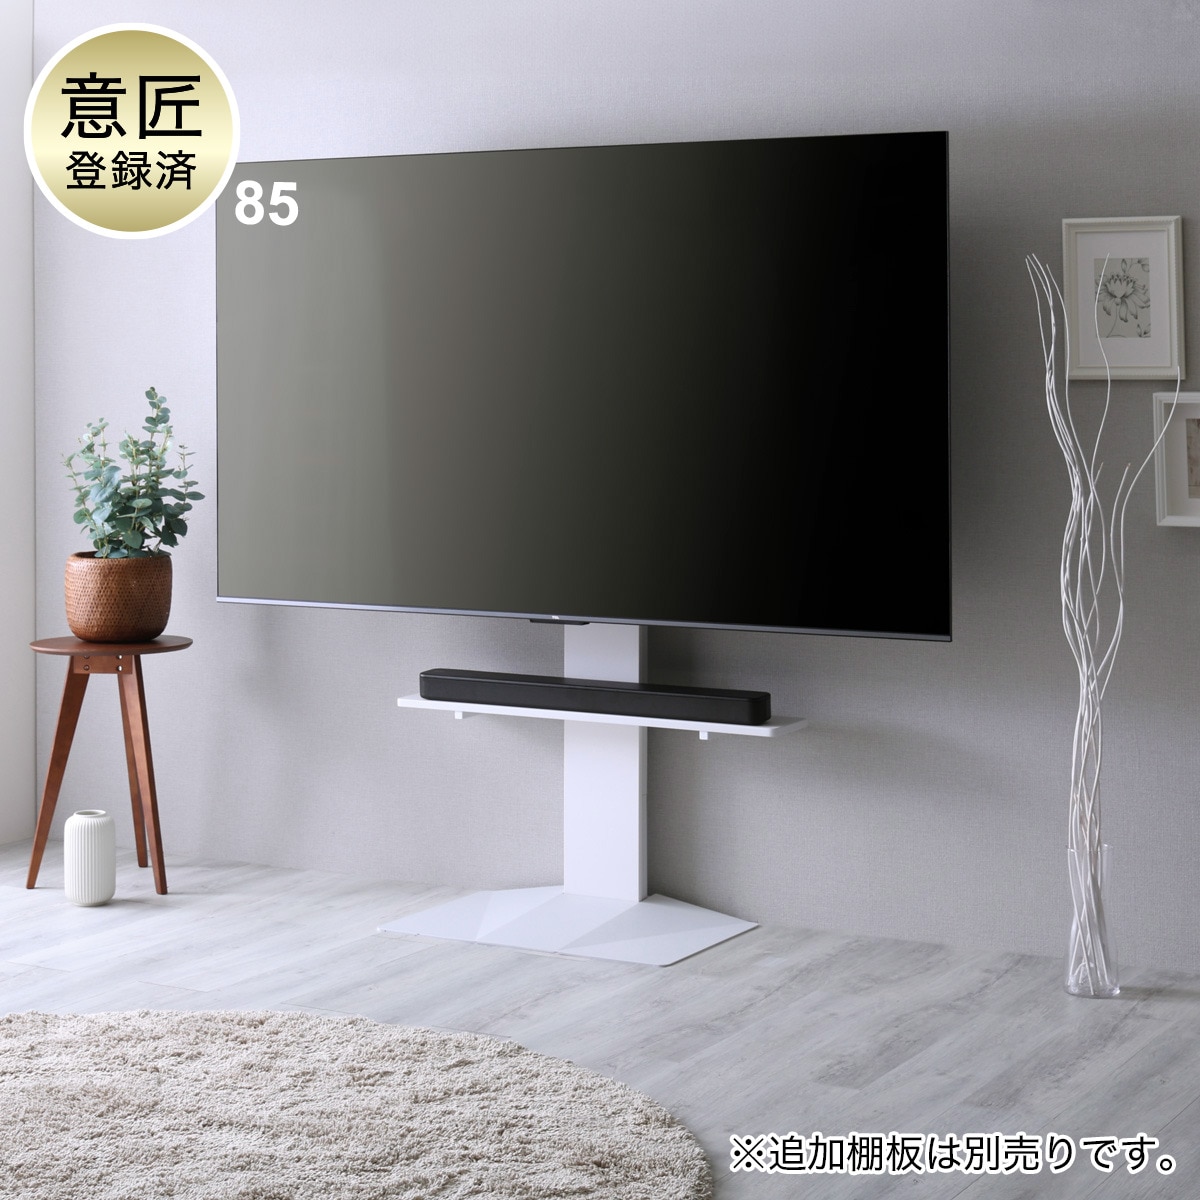 壁寄せテレビスタンド(LH02 WH)通販 | ニトリネット【公式】 家具 